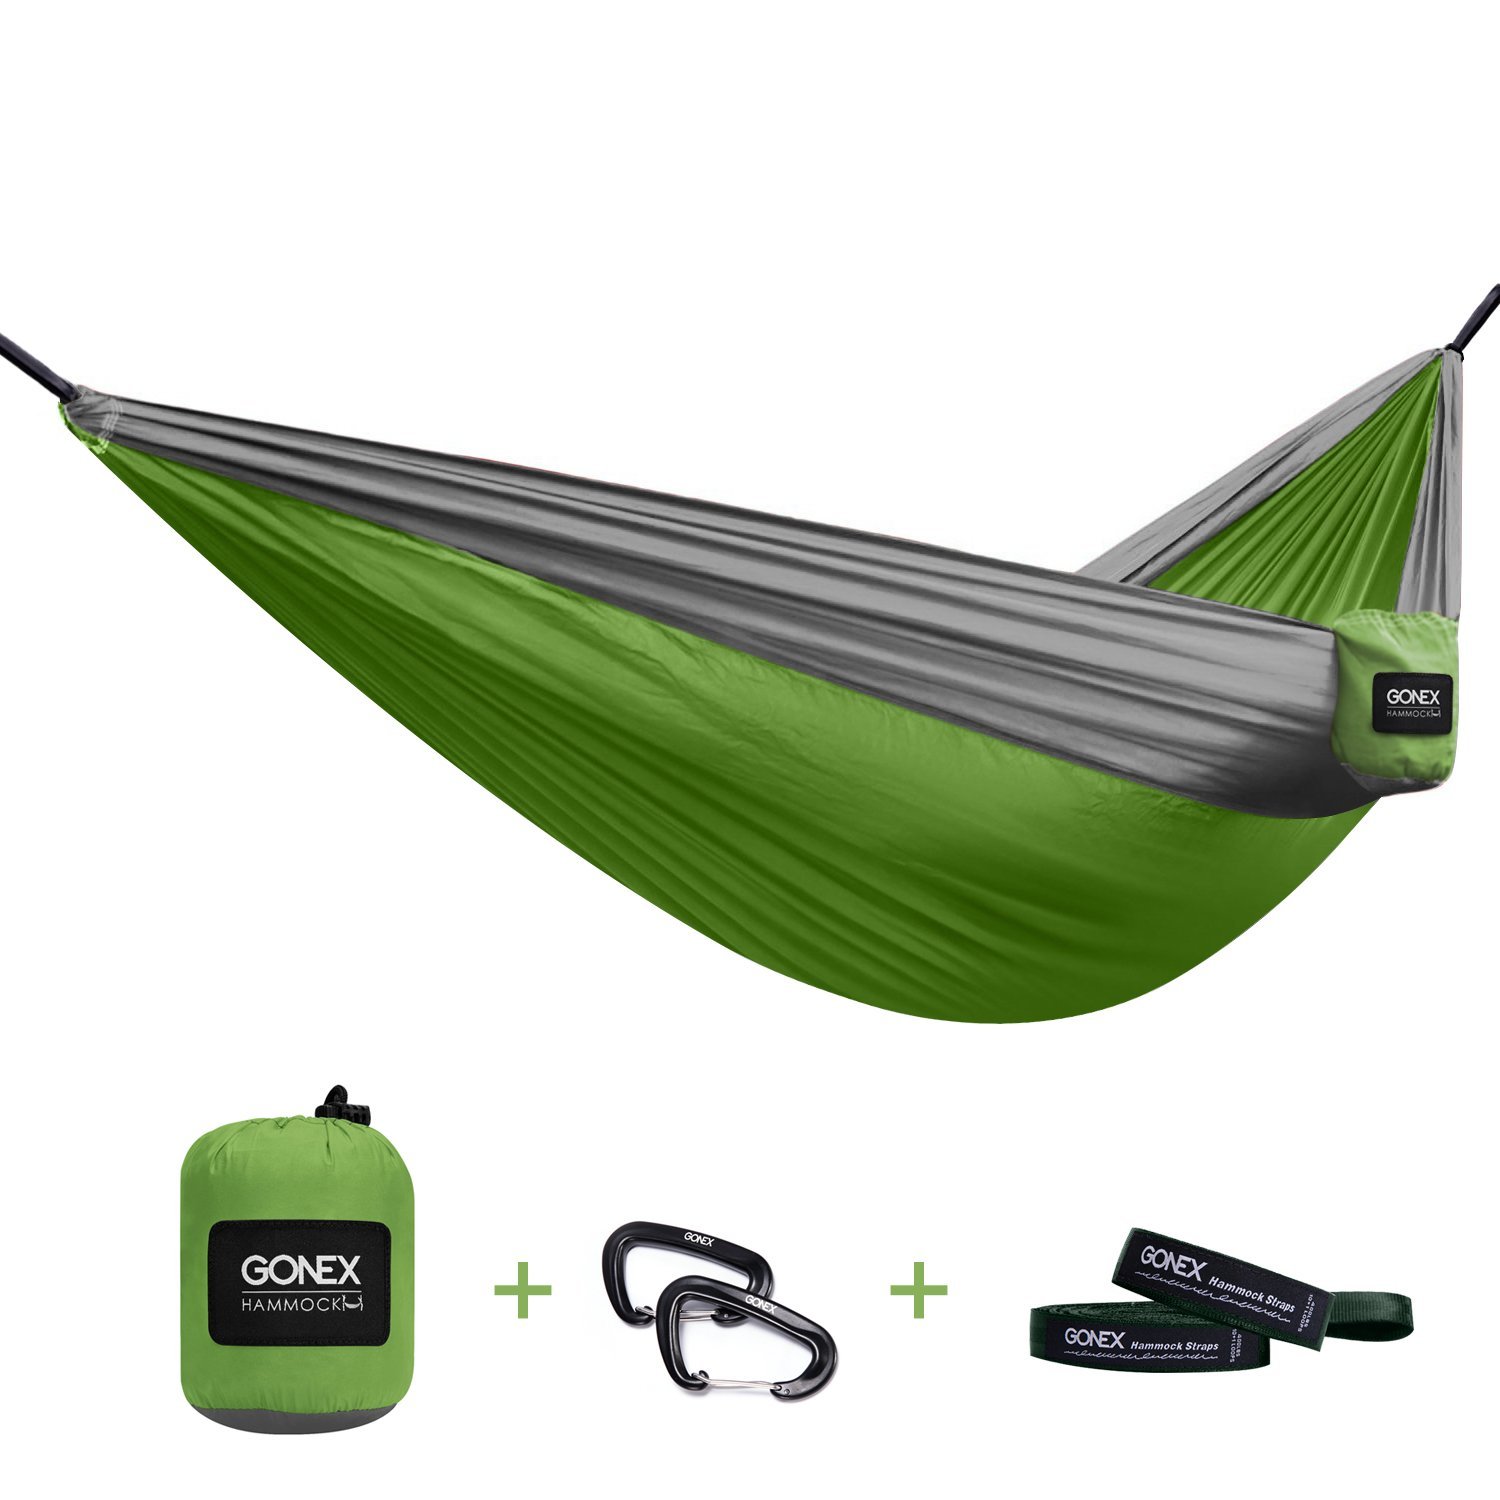 Ultralight Gonex Portable Camping Hammock – Just $21.99